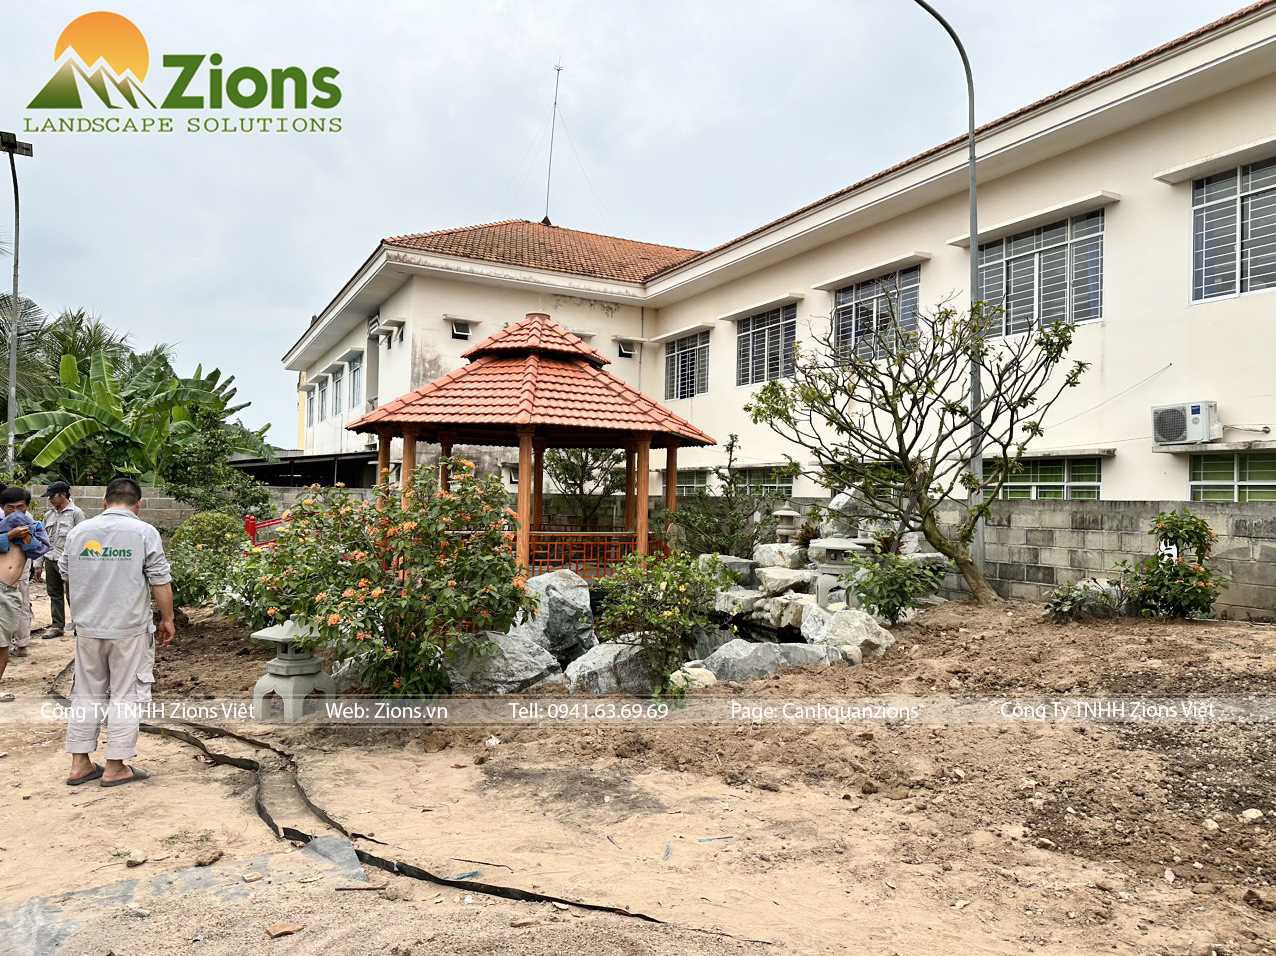 Thi công sân vườn tại An Giang được thực hiện bởi Zions Landscape